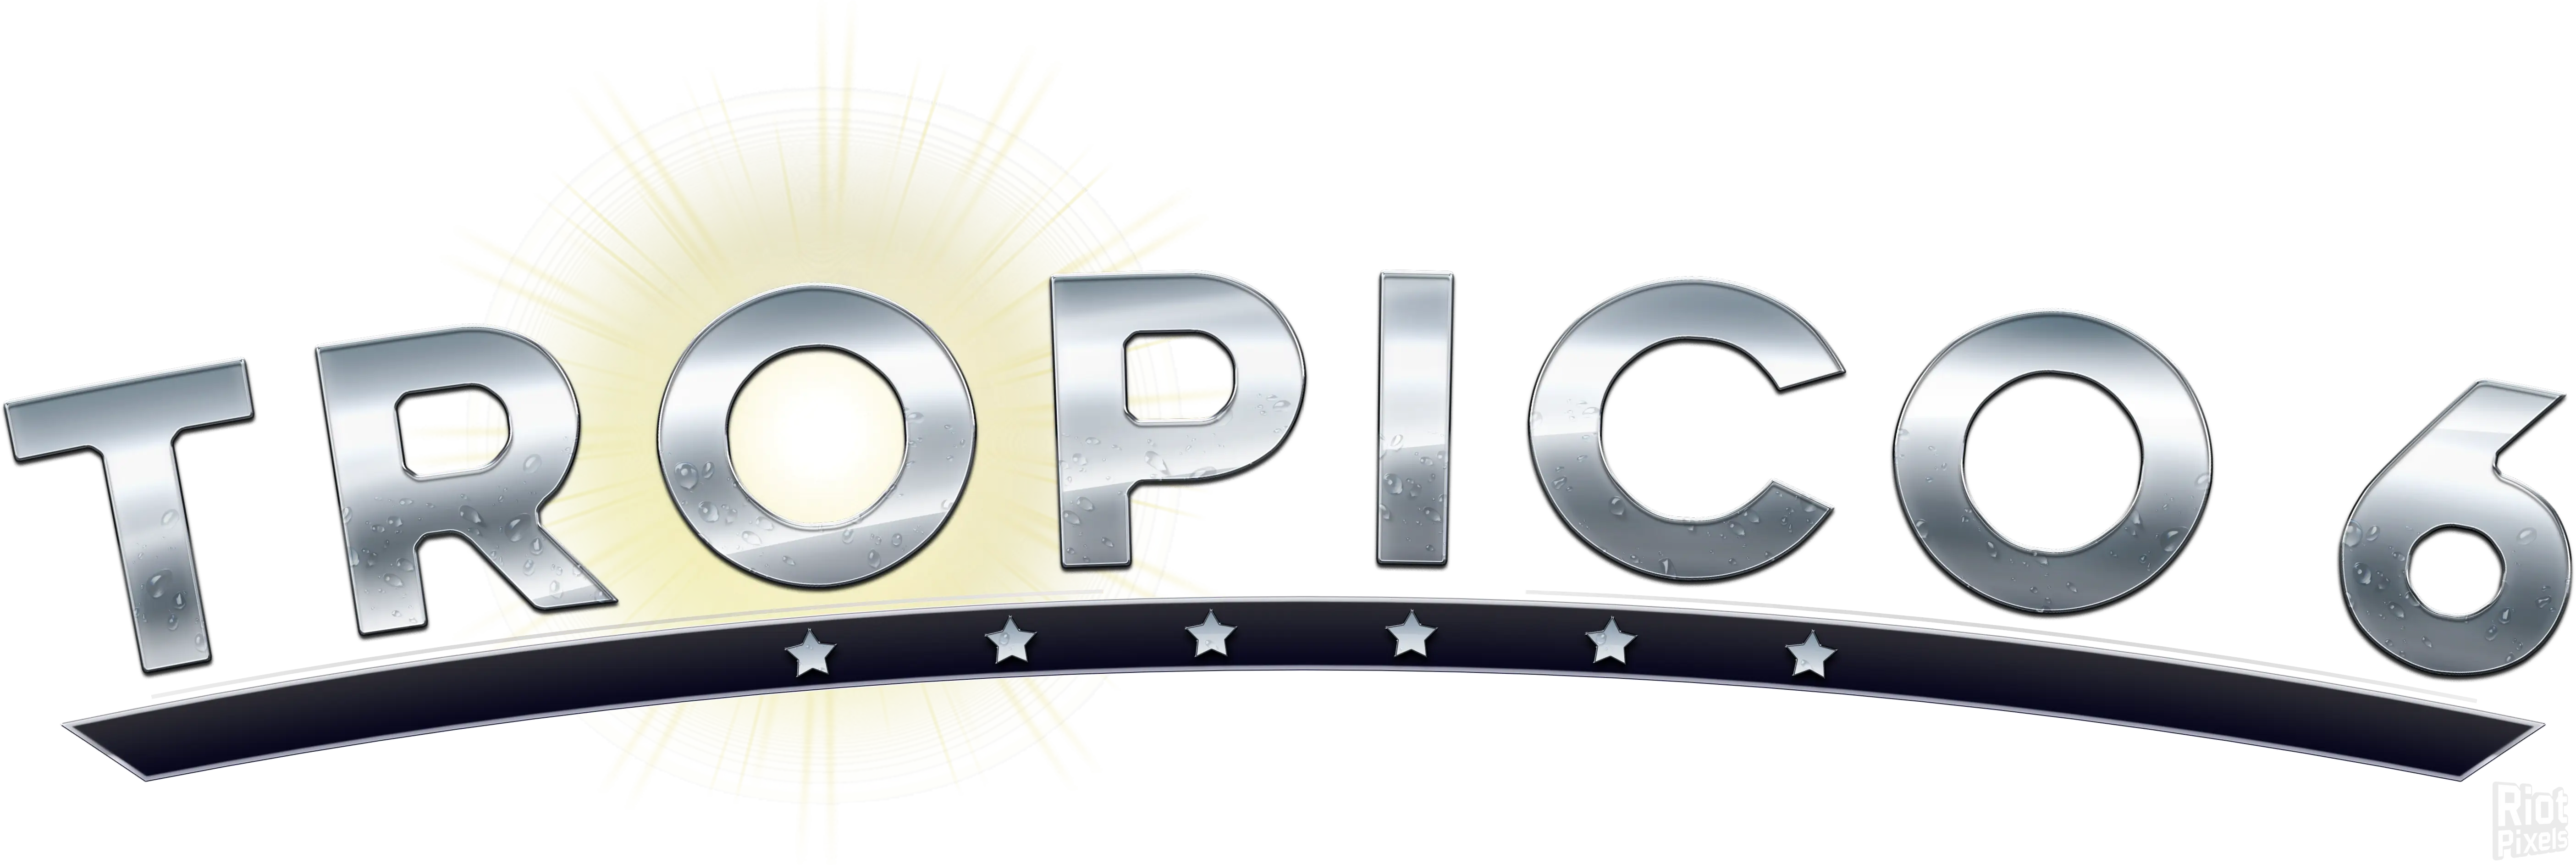 logo Tropico 6